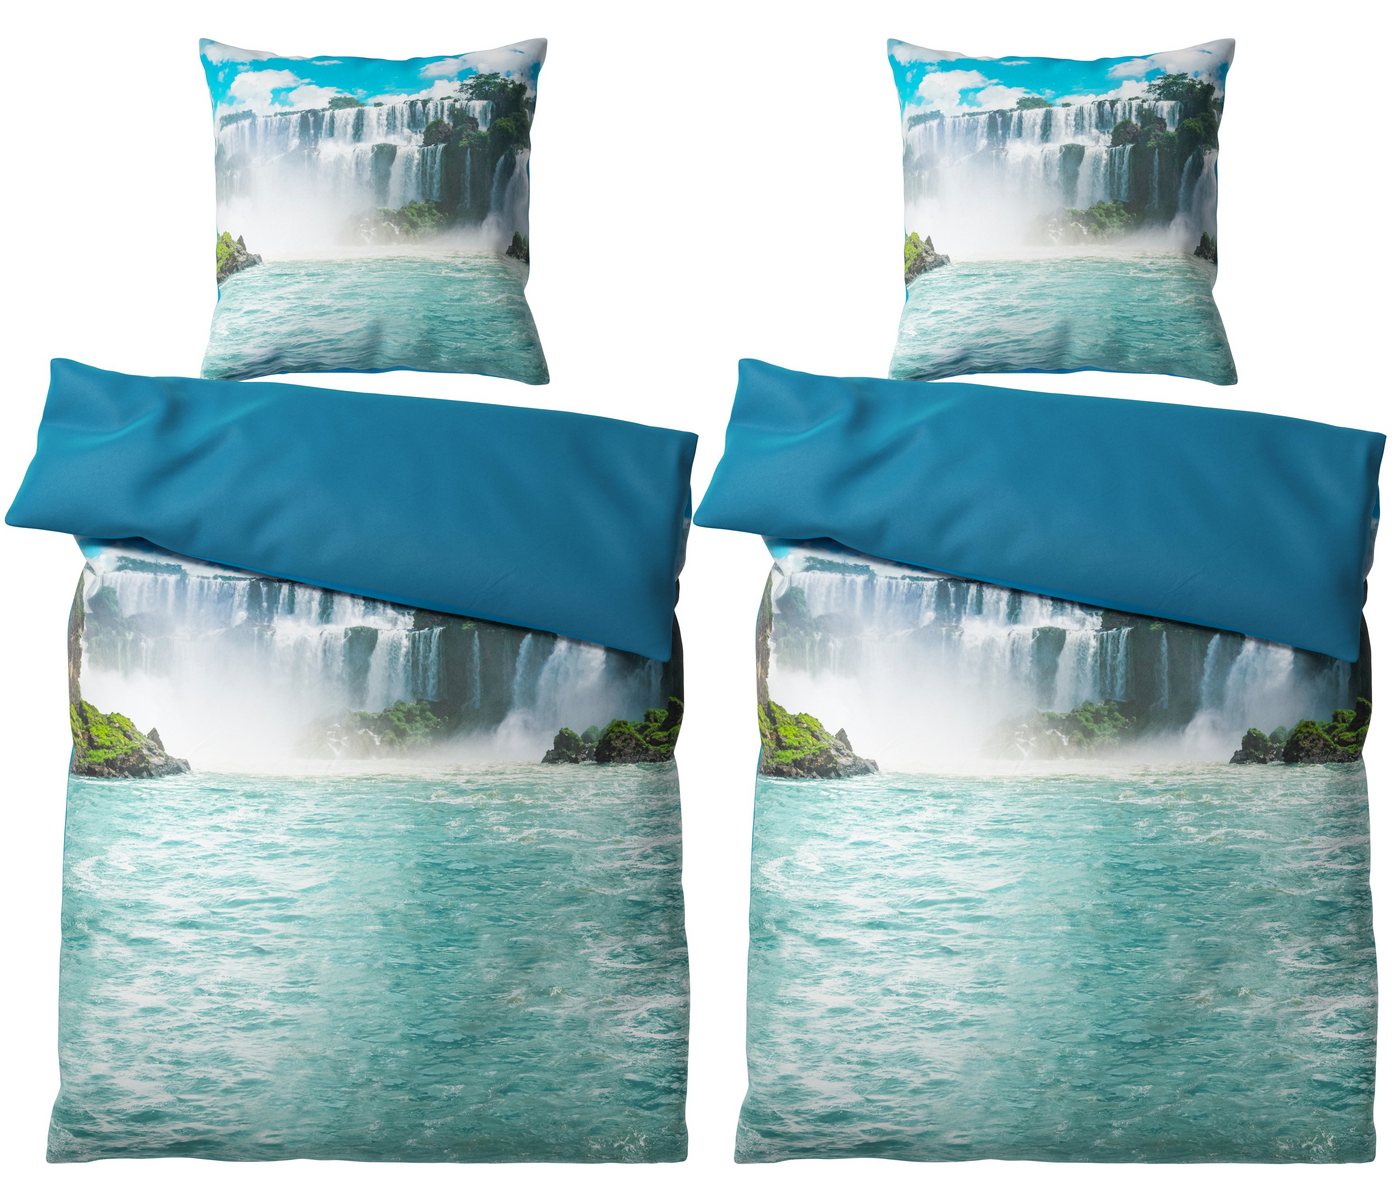 Bettwäsche Wasserfall 135x200 cm, Bettbezug und Kissenbezug, Sanilo, Baumwolle, 4 teilig von Sanilo